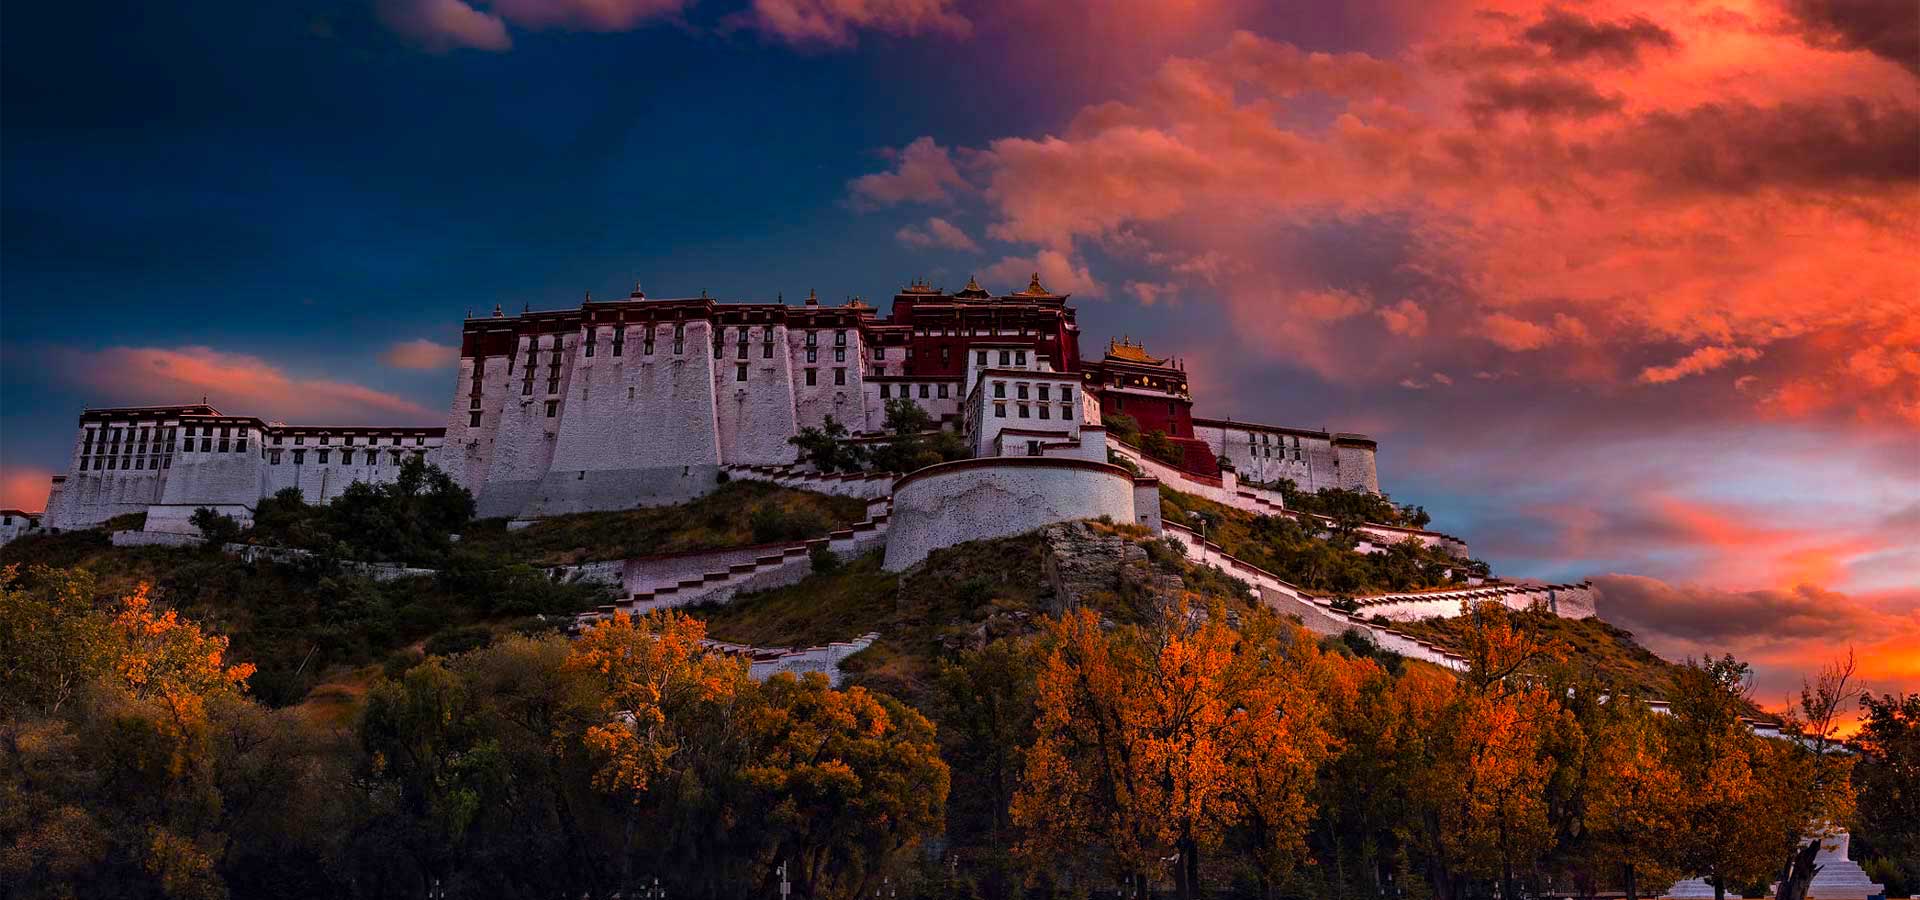 Tibet travel forum